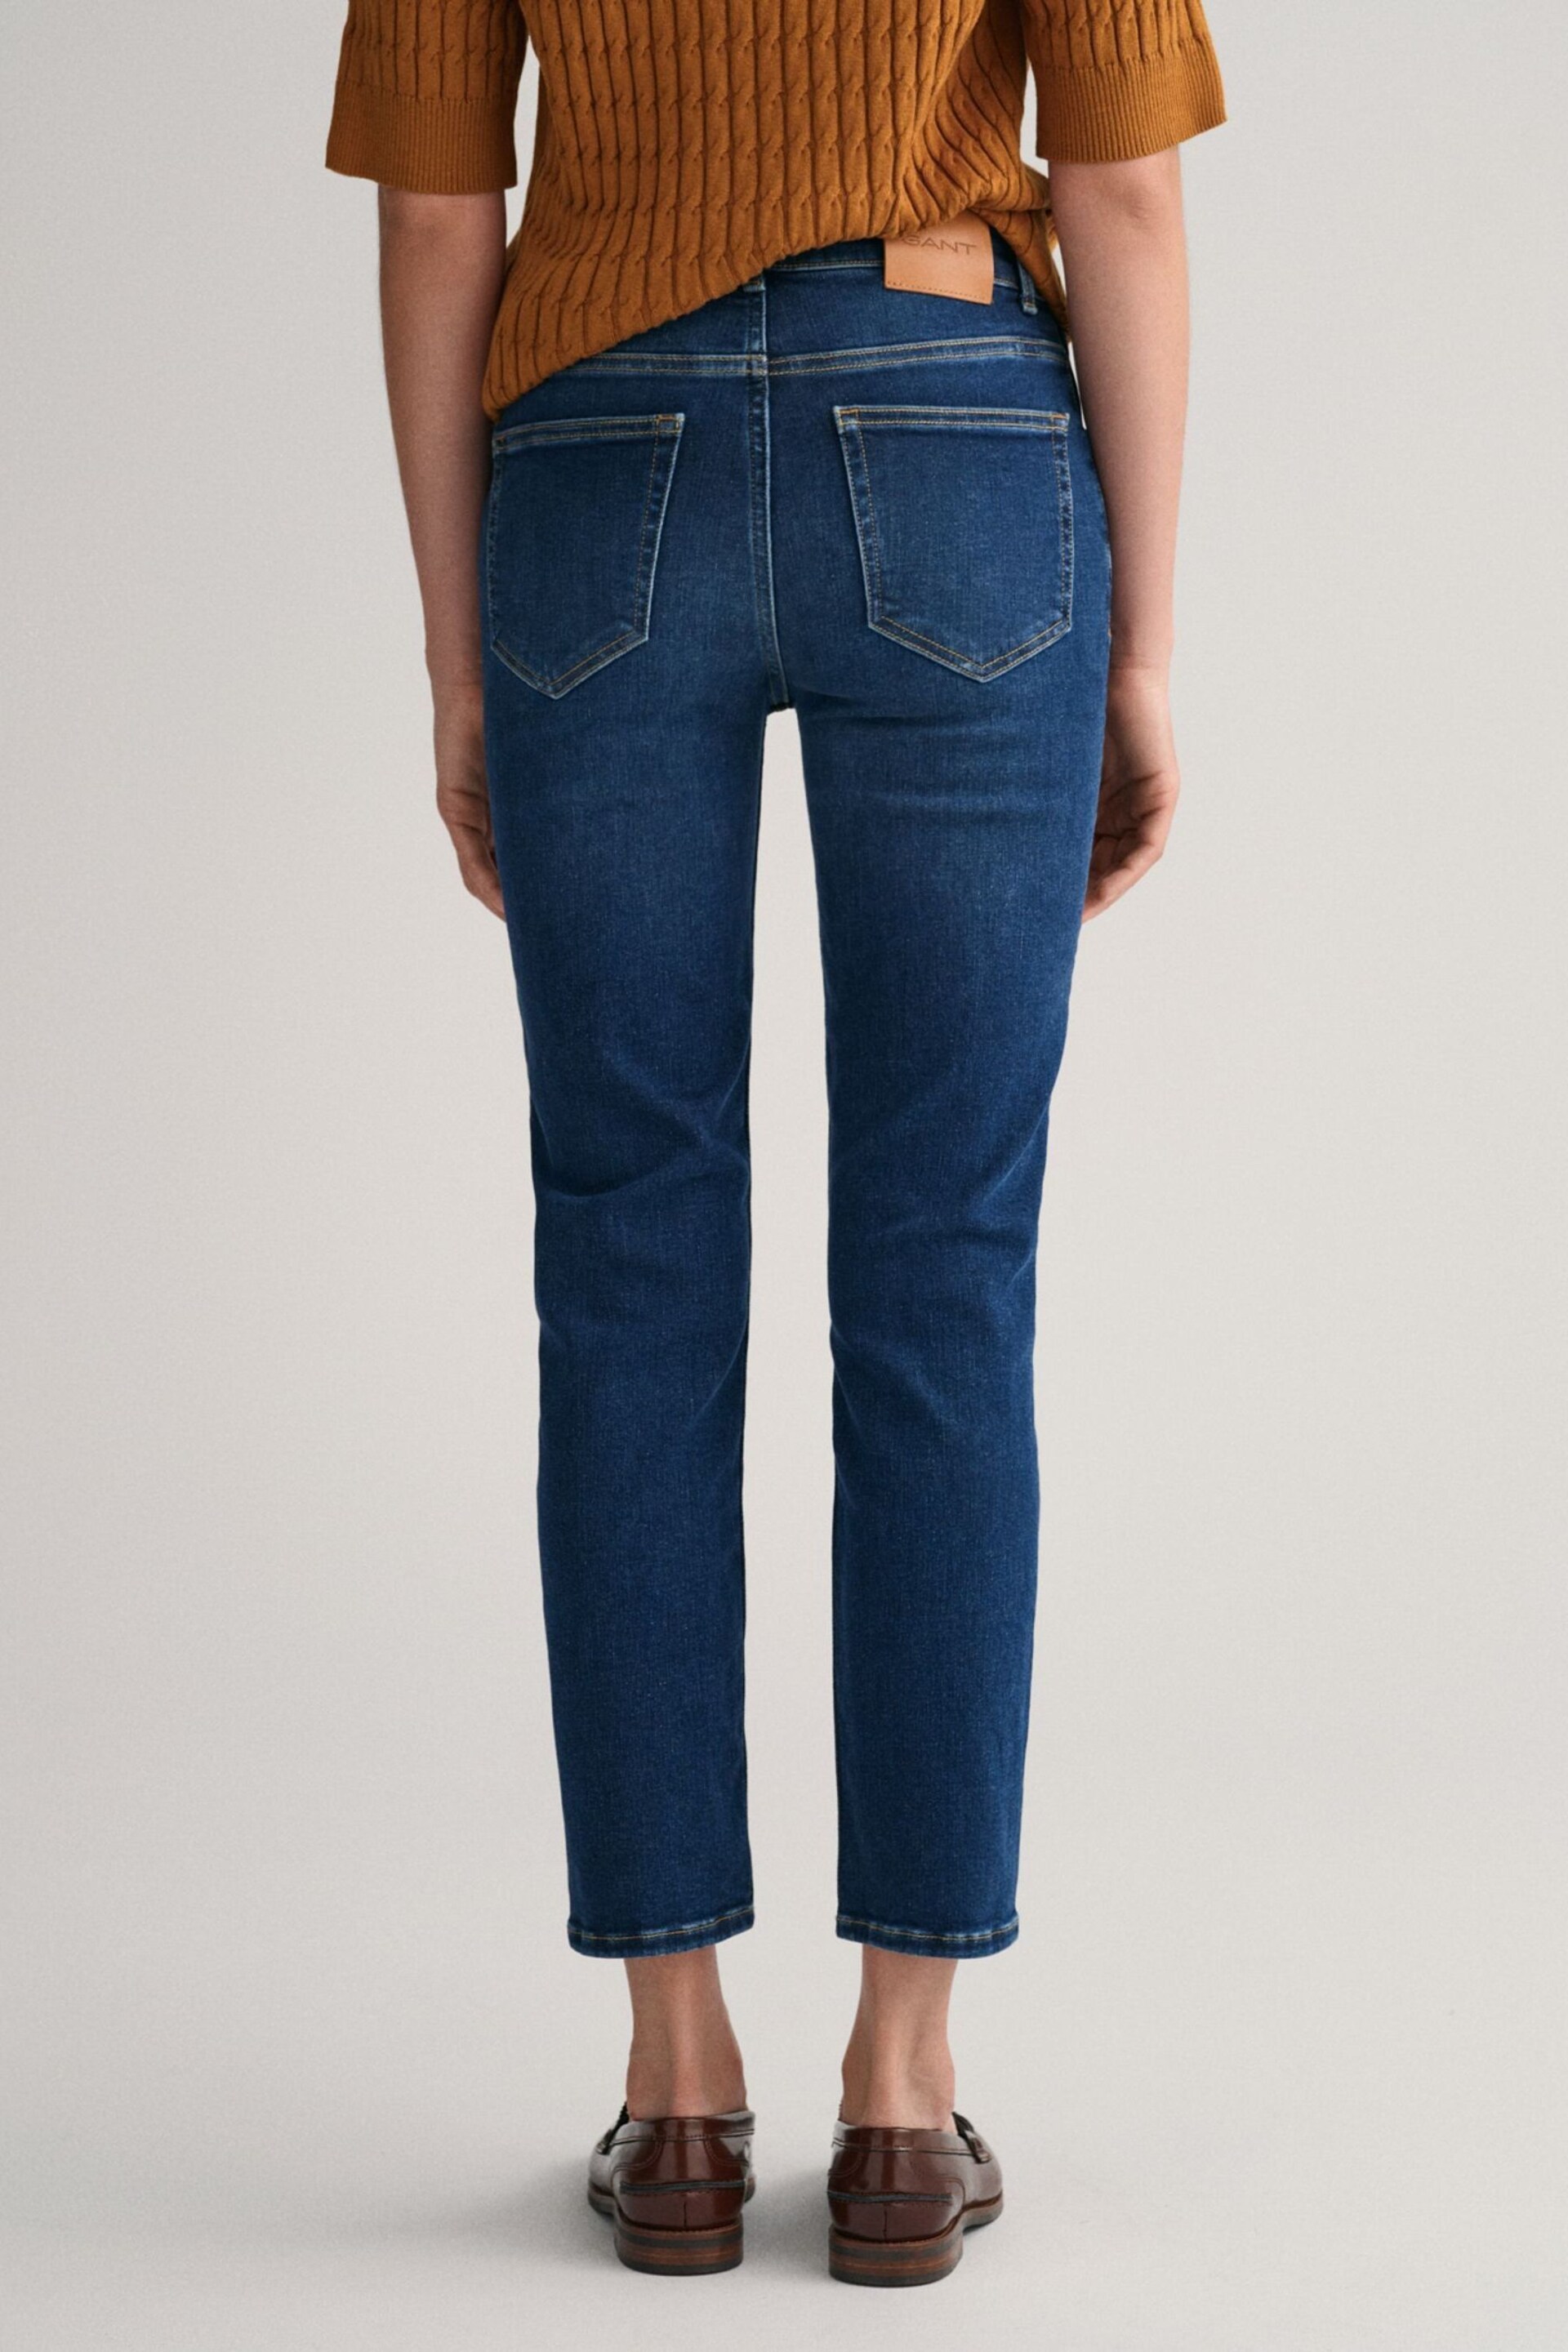 GANT Blue Slim Fit Ankle Length Jeans - Image 4 of 6